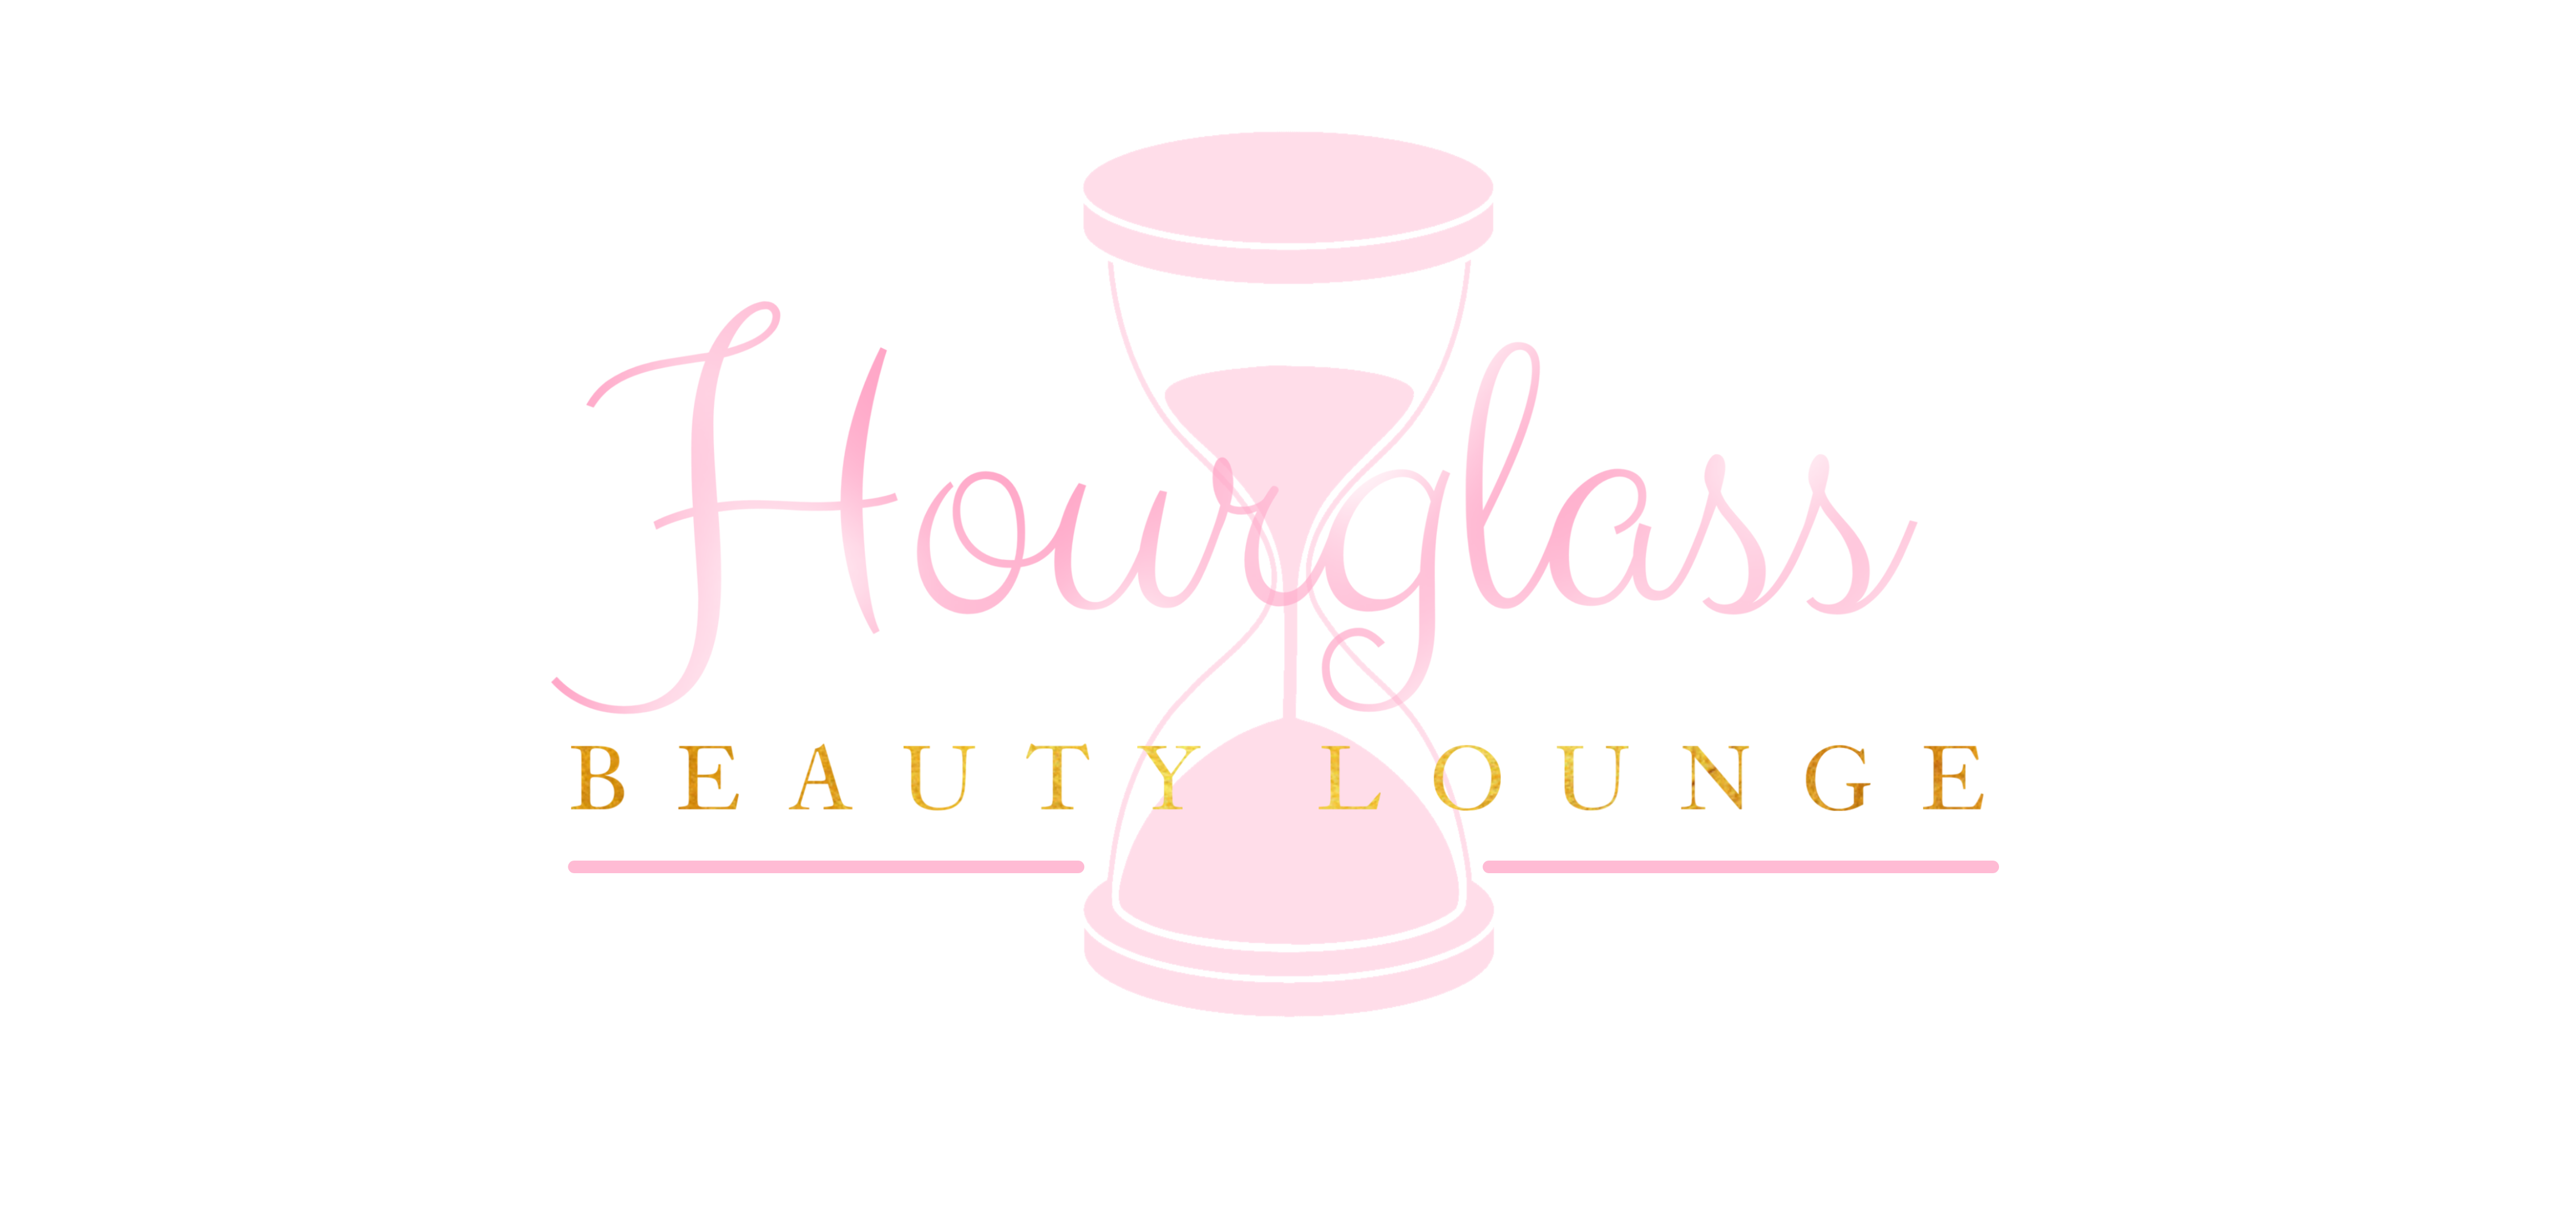 Hourglass Beauty Lounge